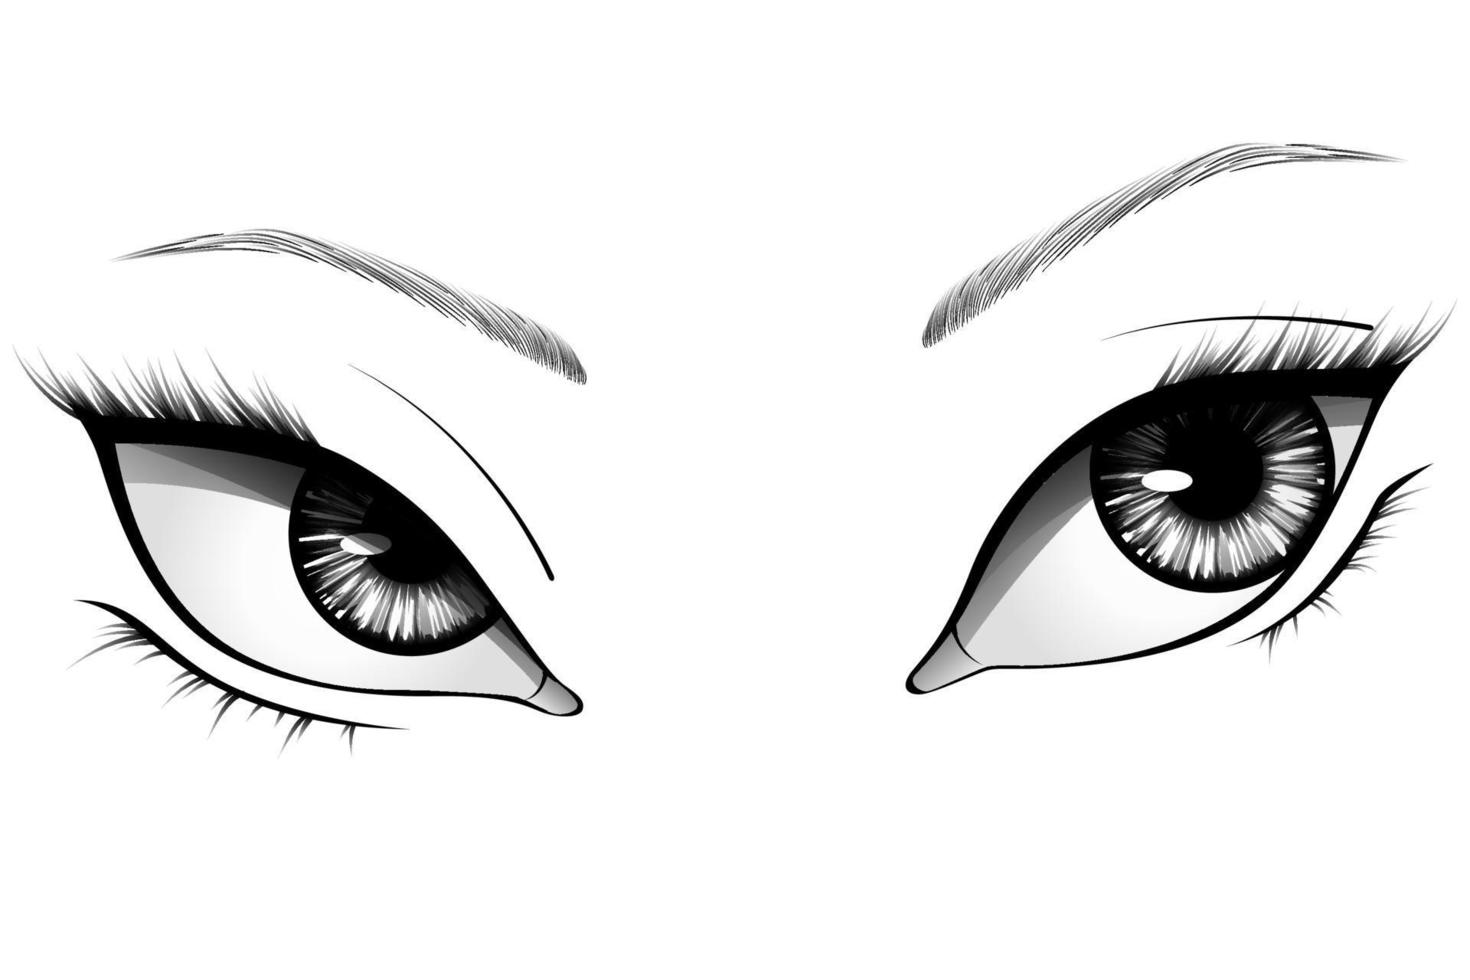 Ojos de mujer de dibujos animados dibujados a mano con iris detallado, cejas y pestañas. ilustración vectorial de tipografía vector